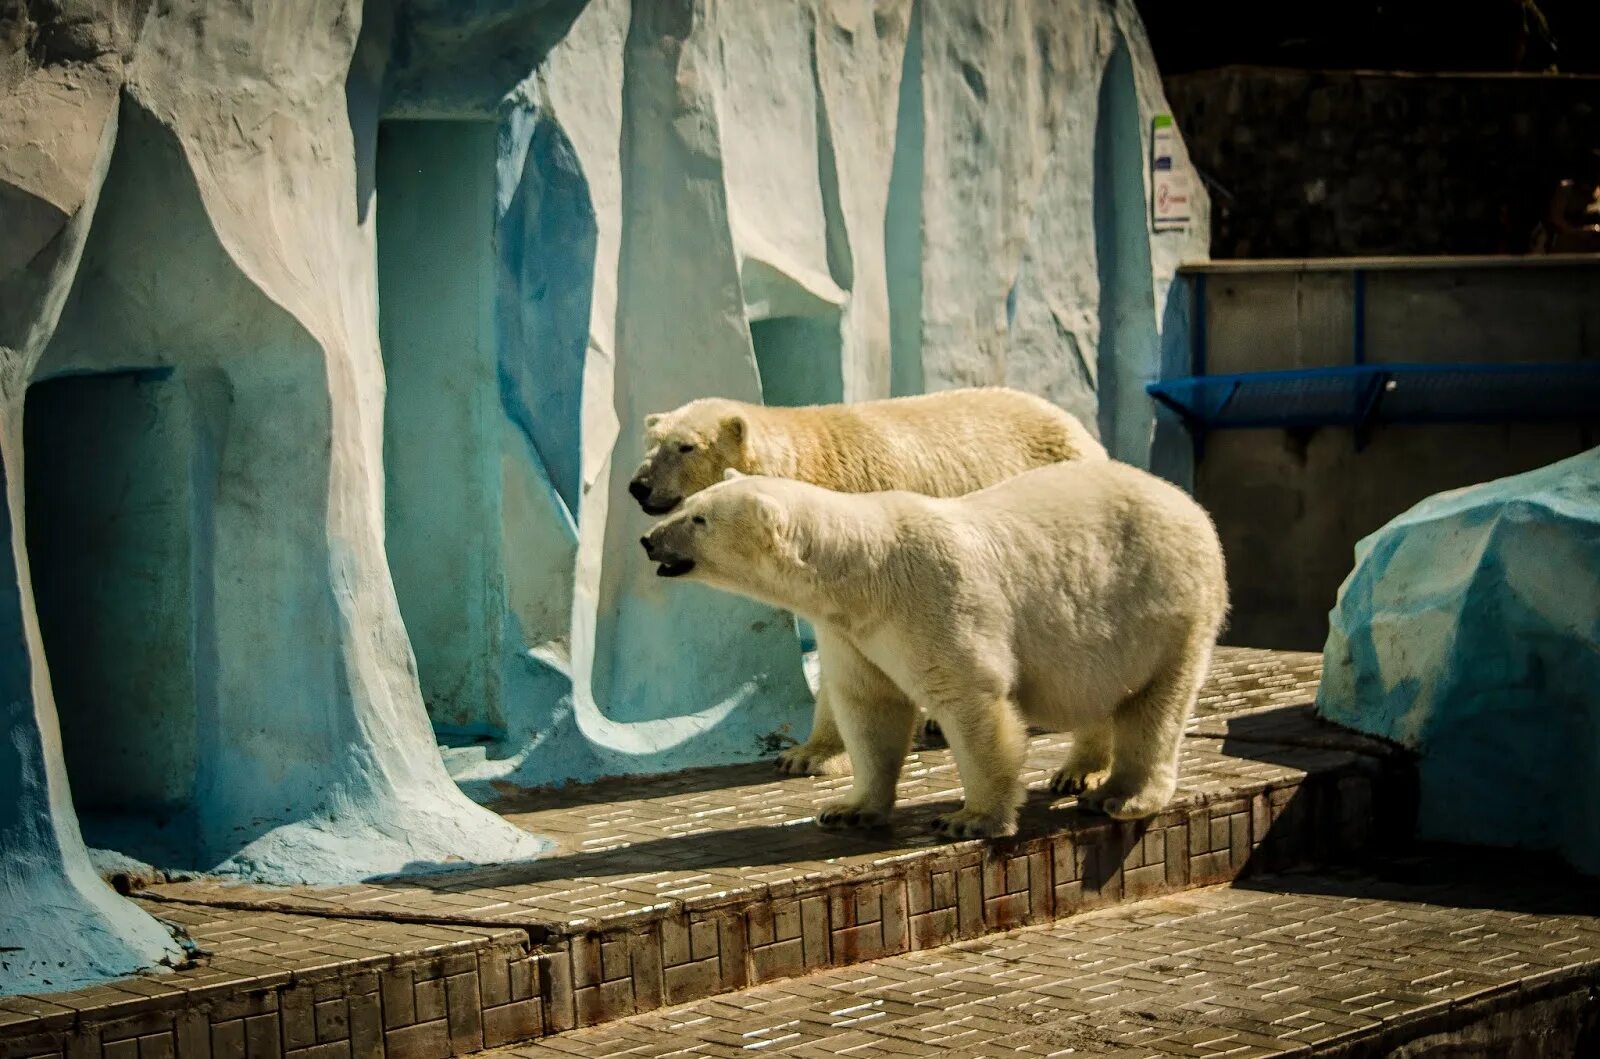 Посетив зоопарк мной были сделаны фотографии животных. Новосибирский зоопарк Новосибирск. Достопримечательности Новосибирска зоопарк. Ворота зоопарка Новосибирск. Животные Новосибирского зоопарка.